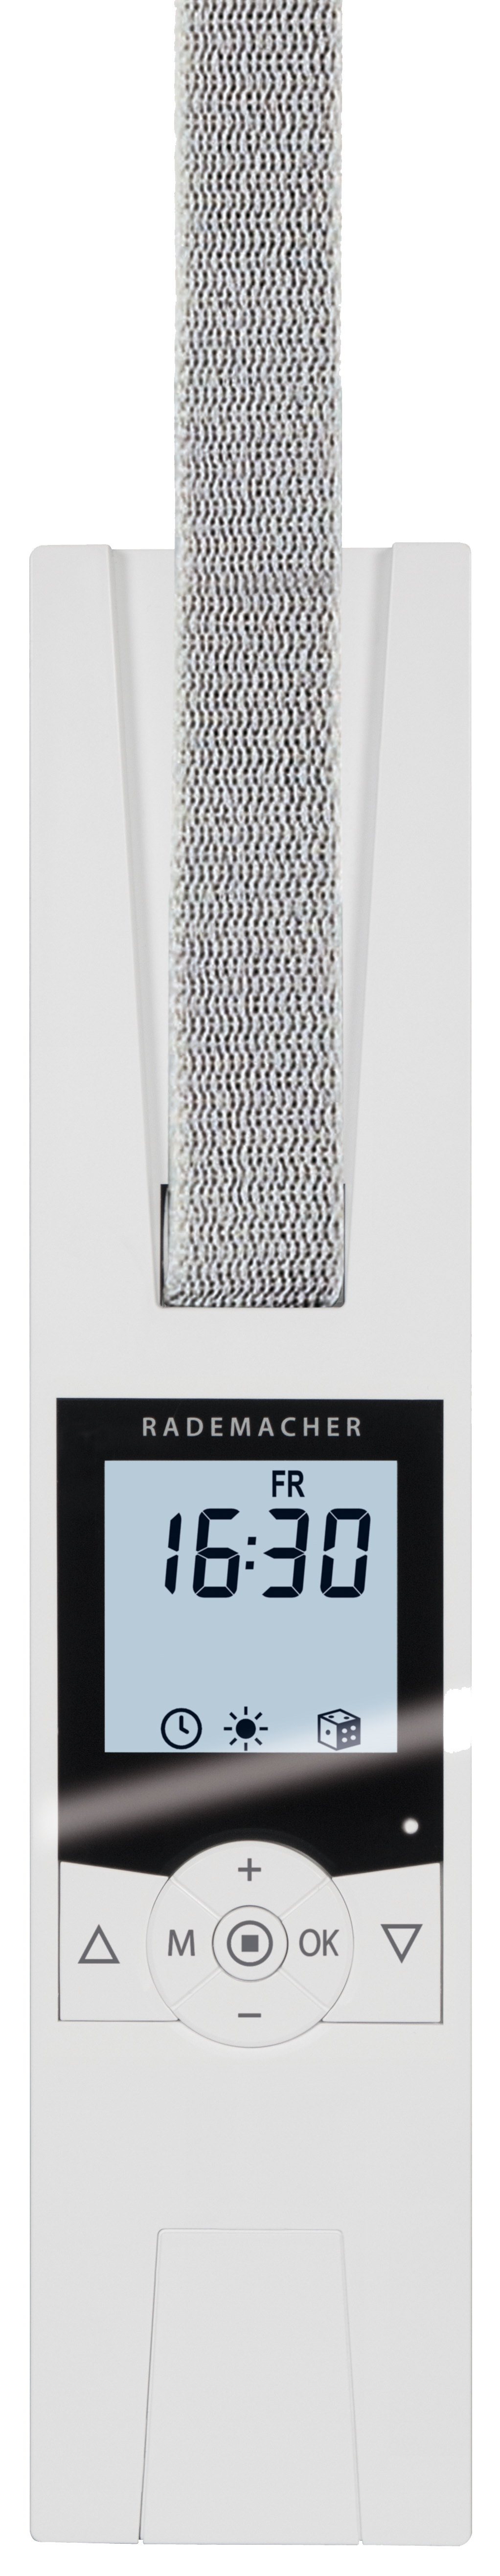 Rademacher RolloTron - Comfort Plus 1705-UW